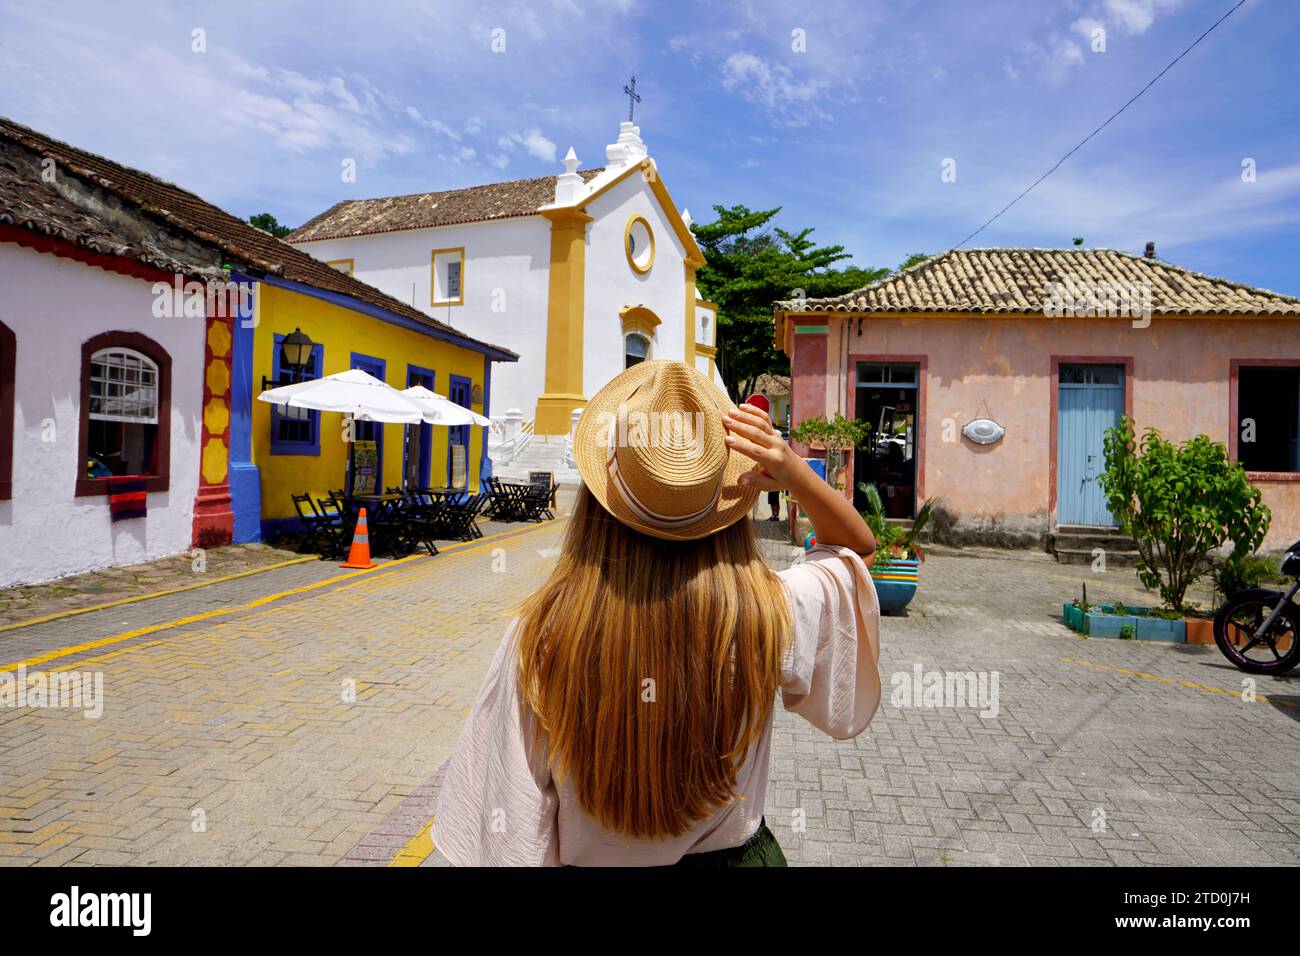 Tourisme à Santa Catarina, Brésil. Jeune femme voyageur visitant Santo Antônio de Lisboa quartier historique de la ville de Florianopolis à Santa Catar Banque D'Images